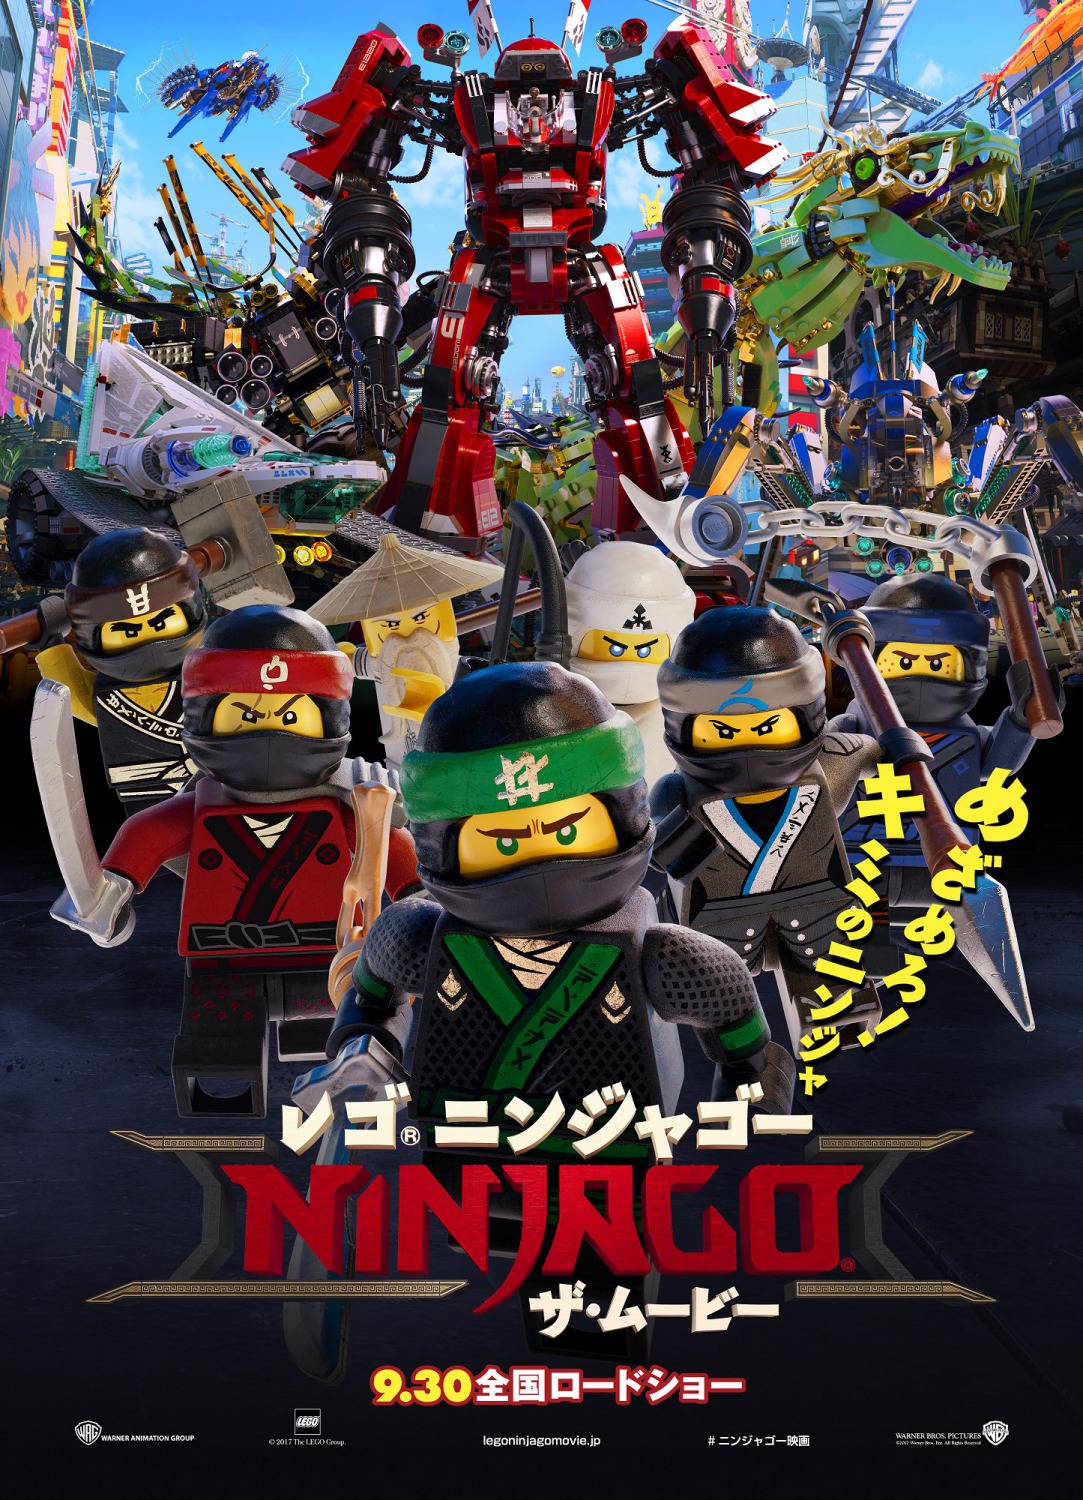 Lego ниндзяго фильм смотреть онлайн